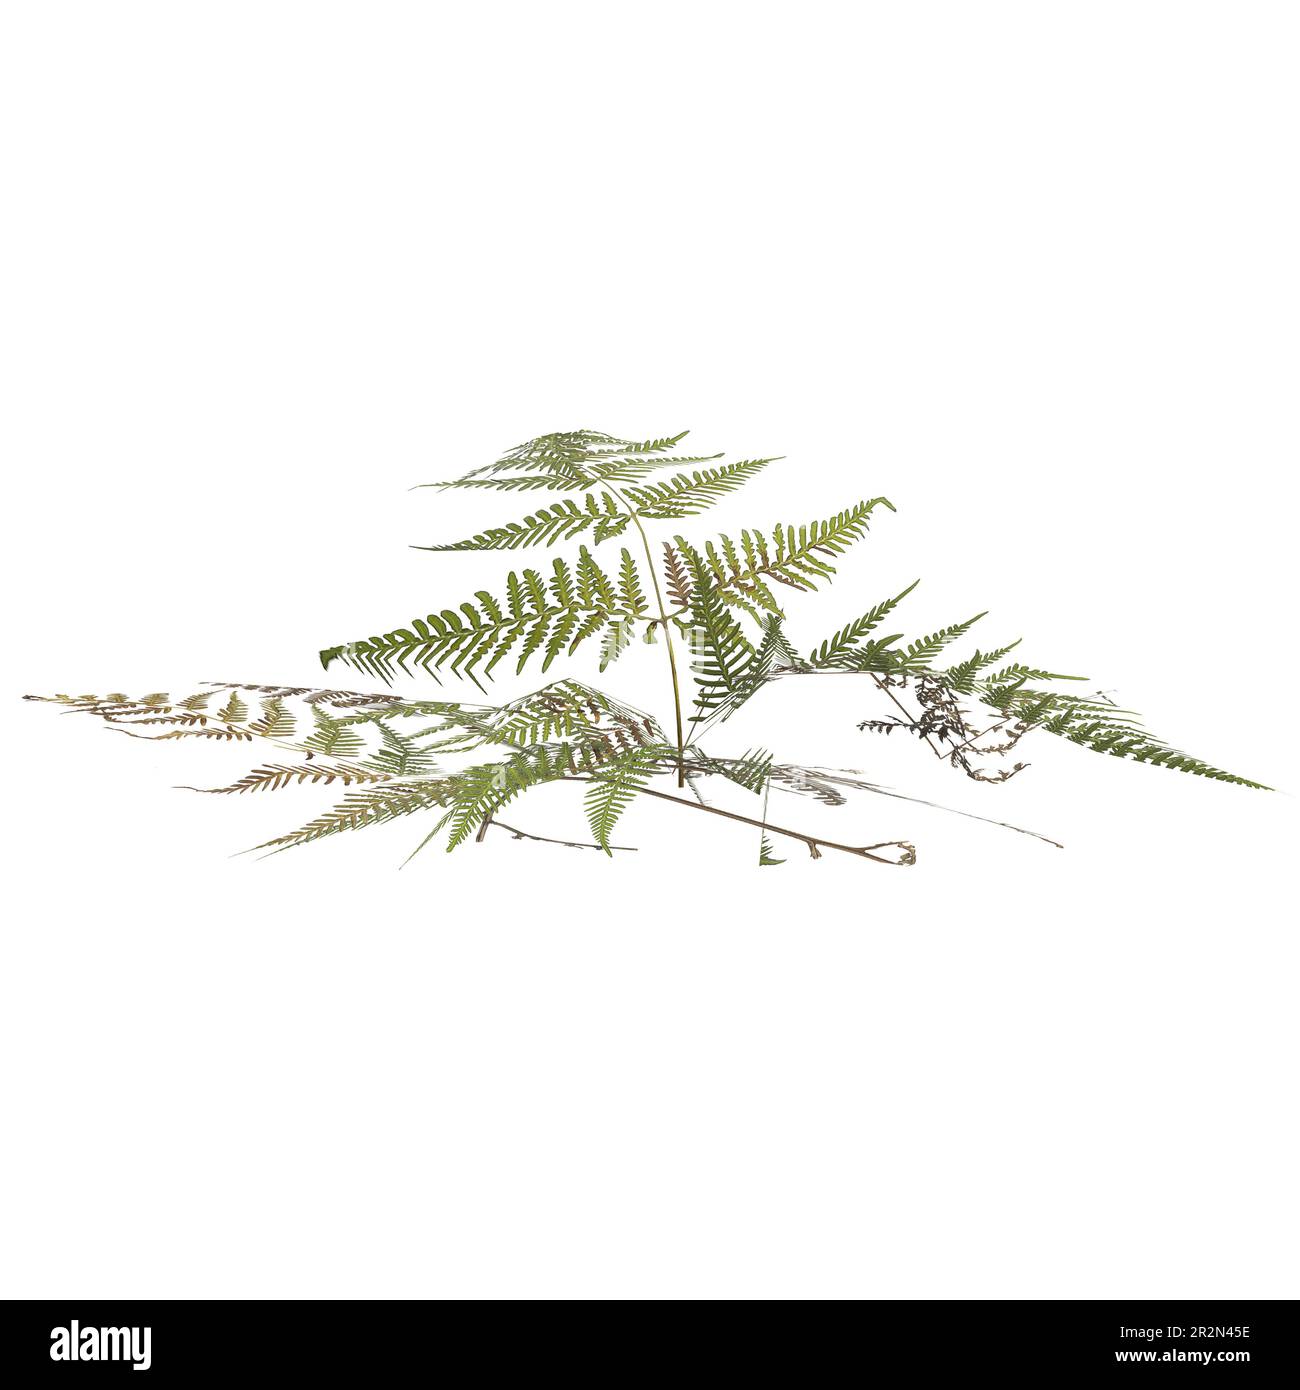 3d illustration of pteris tremula plant isolated on white background Stock Photo